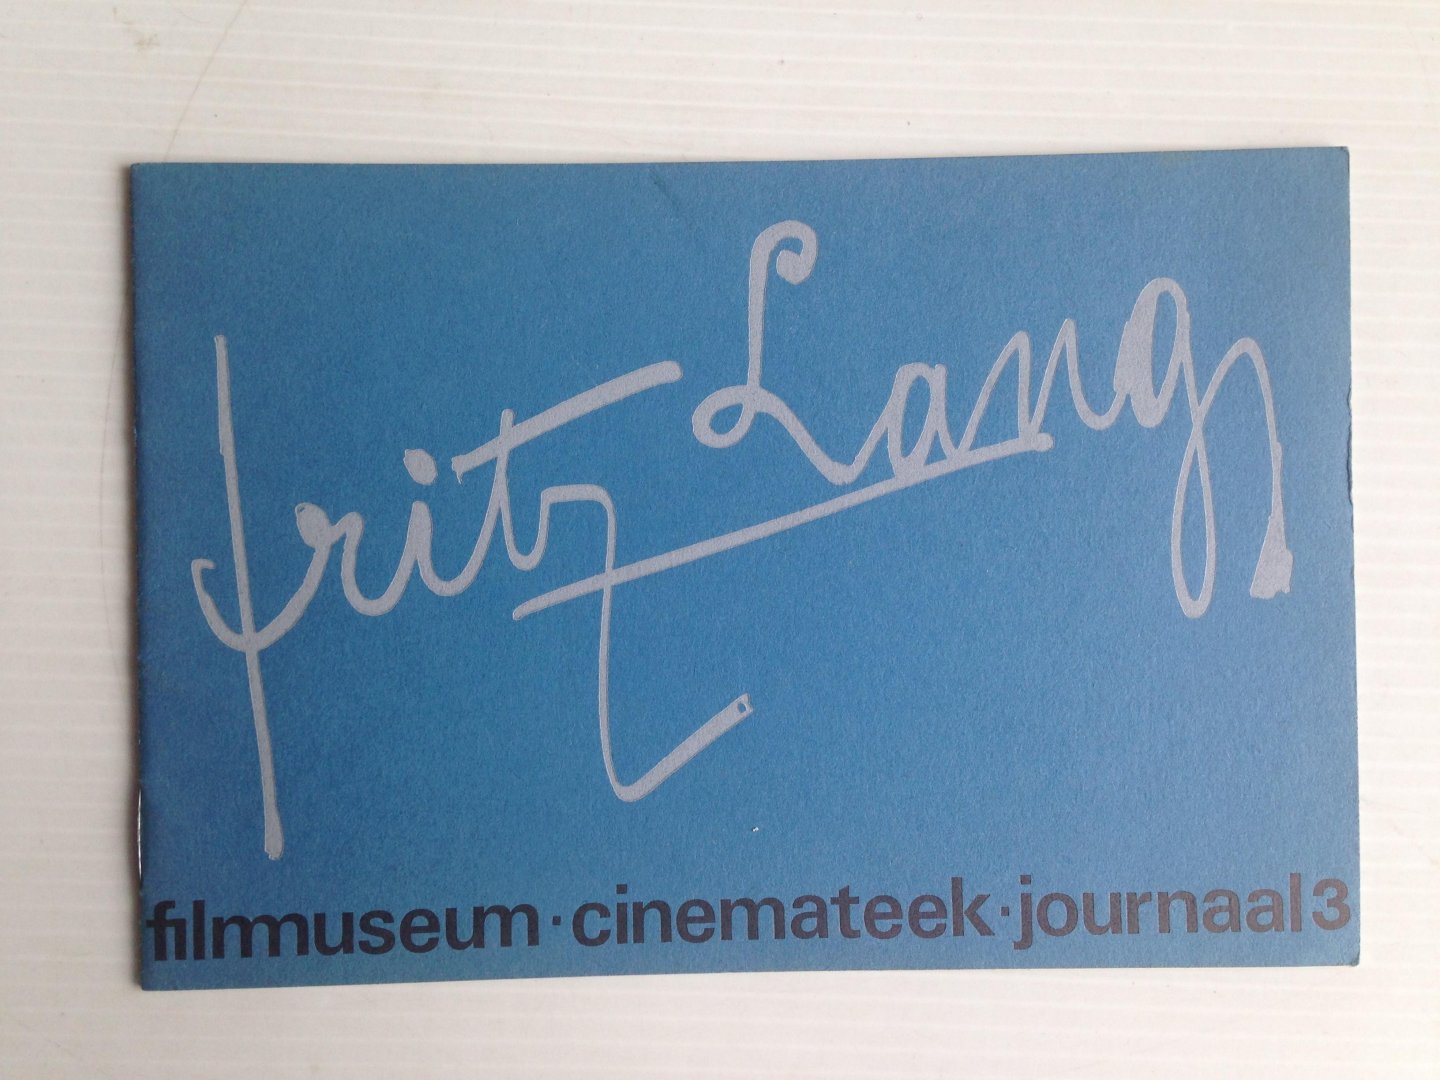  - Fritz Lang, Filmmuseum Cinemateek, Journaal 3